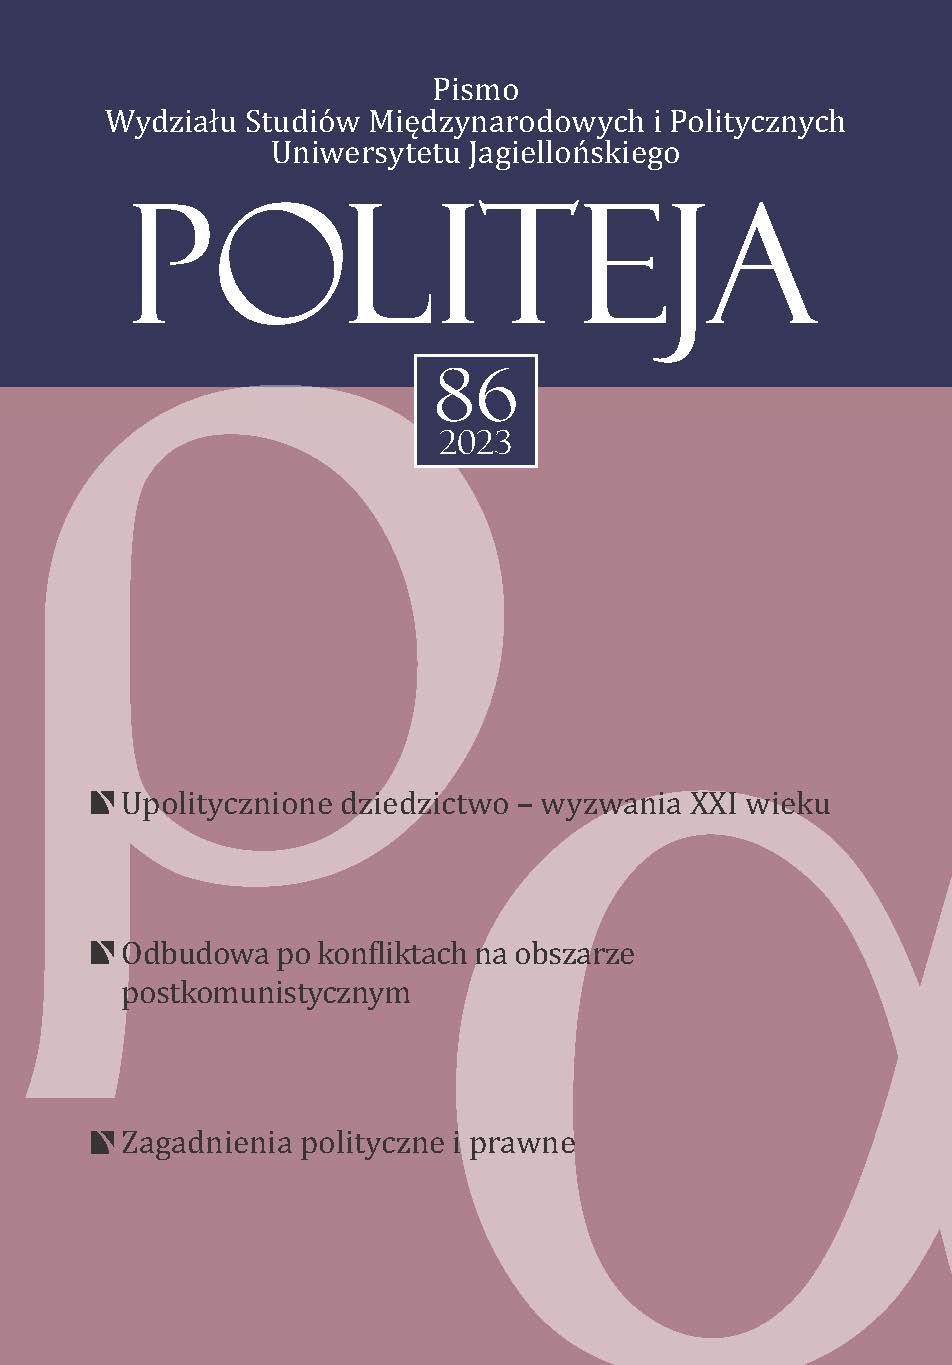 Dyskursy historyczne państw bałtyckich jako instrument ochrony młodych demokracji po rozpadzie ZSRR